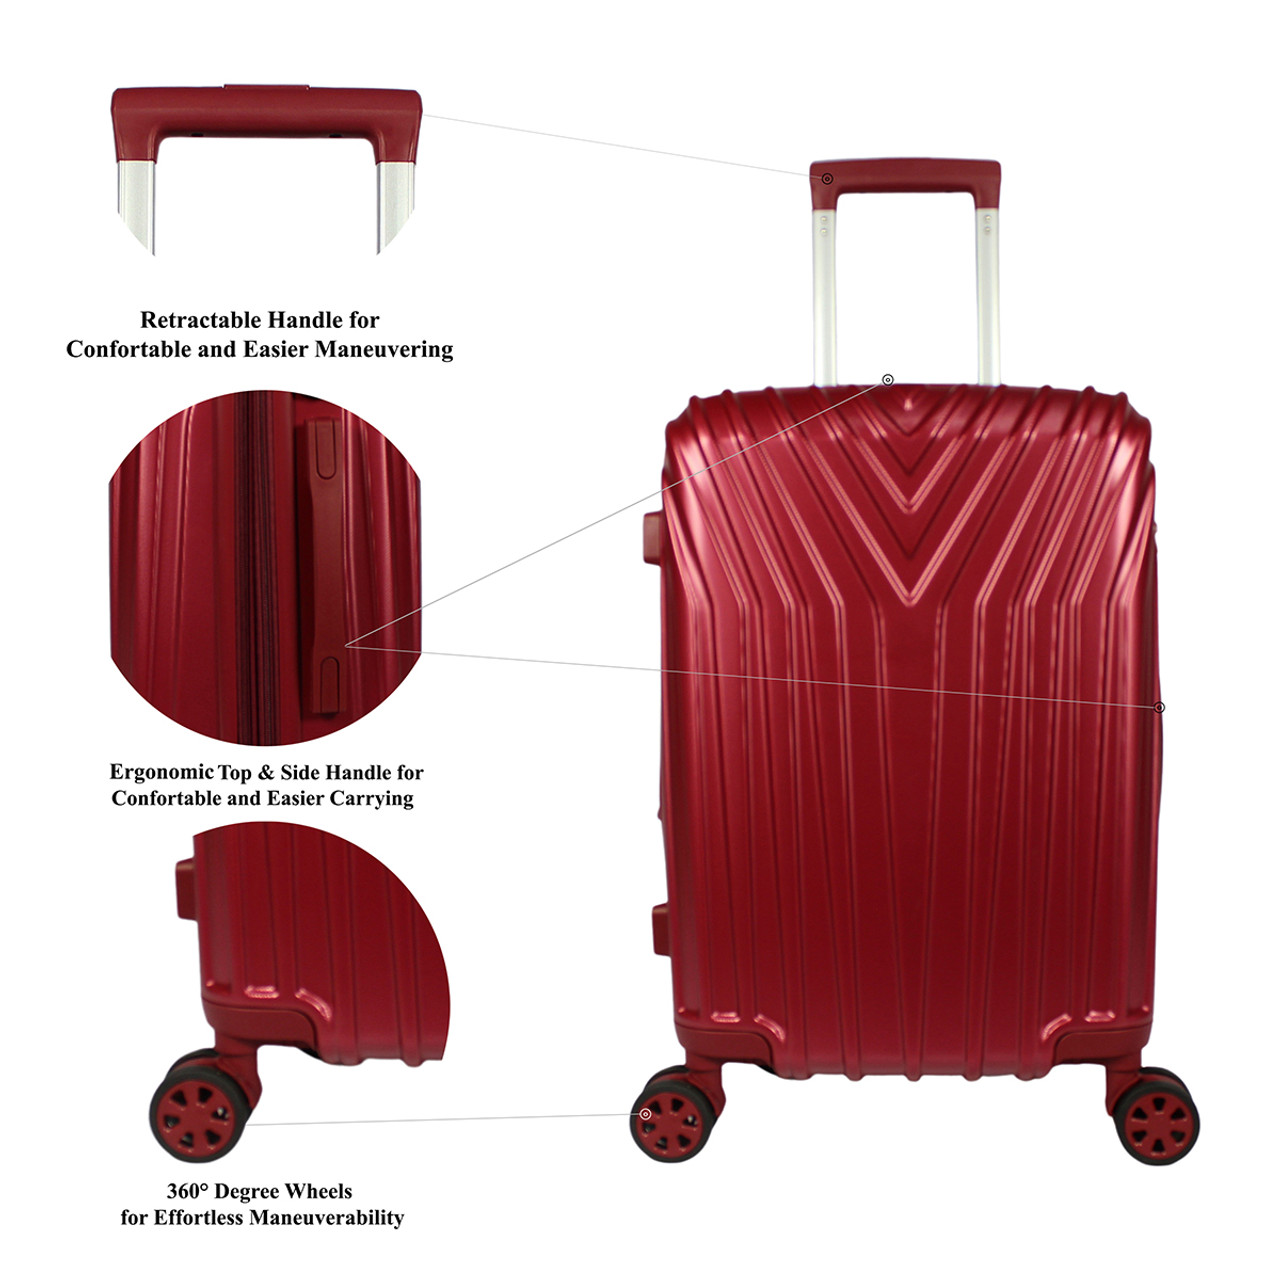 Hardside 3-Piece Spinner Luggage Set by World Traveler™, product image